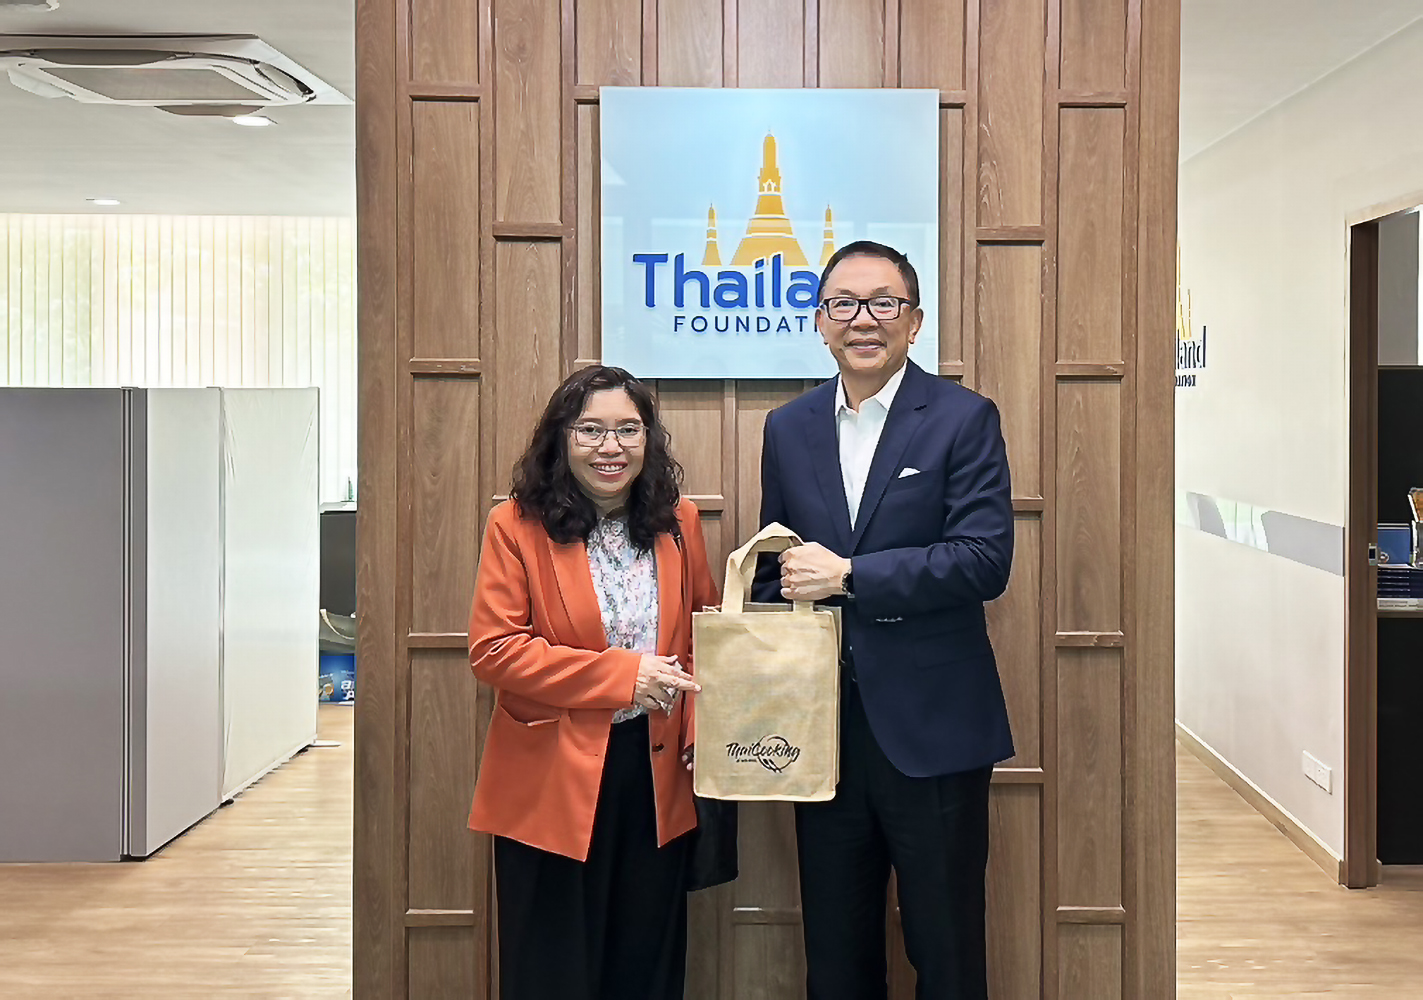 สถาบันฯ หารือความร่วมมือทางวิชาการร่วมกับ มูลนิธิไทย (Thailand Foundation)